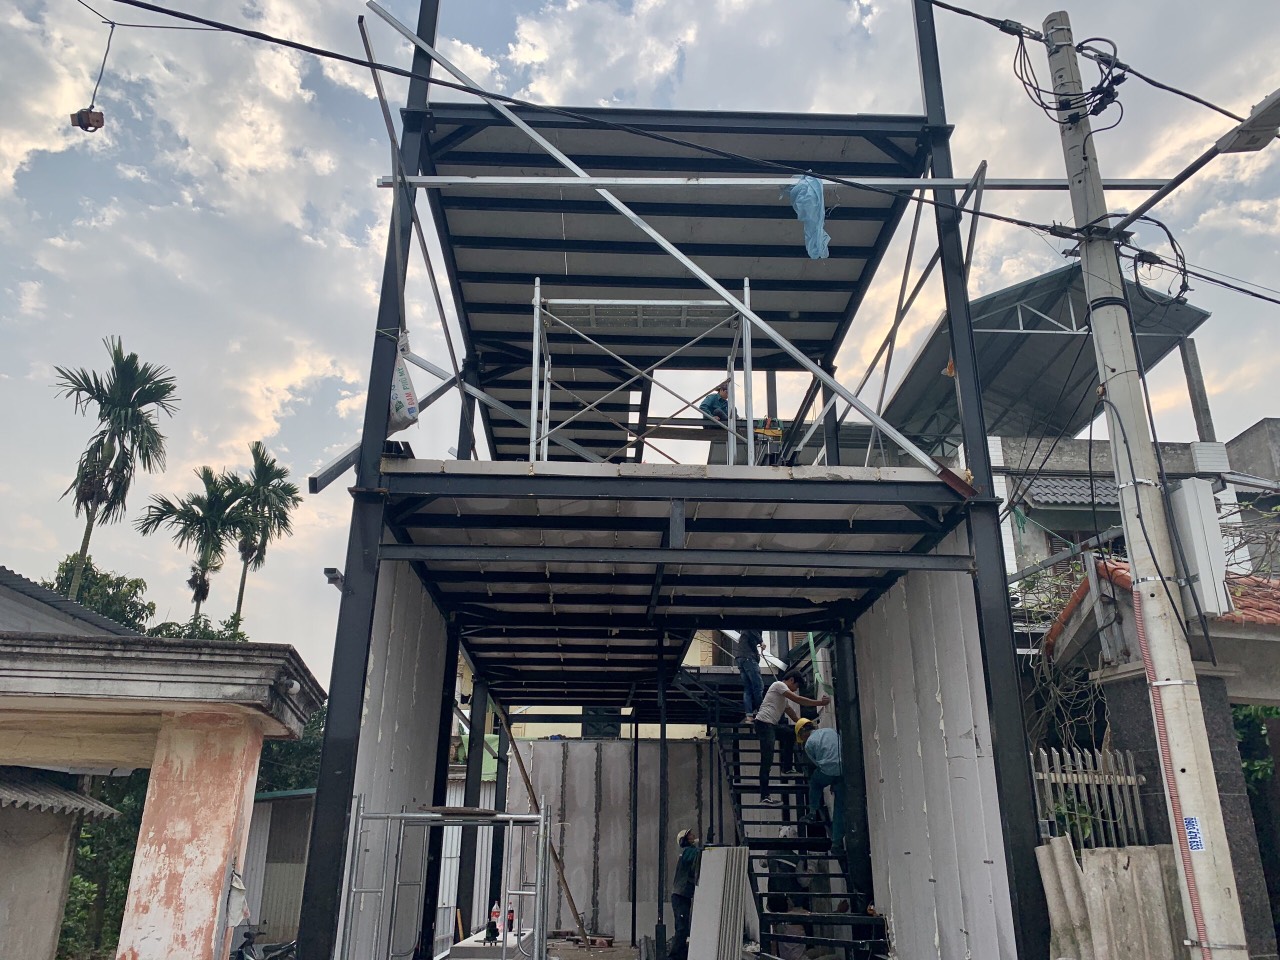 Thi công nhà lắp ghép bằng tấm bê tông nhẹ tại Quảng Nam